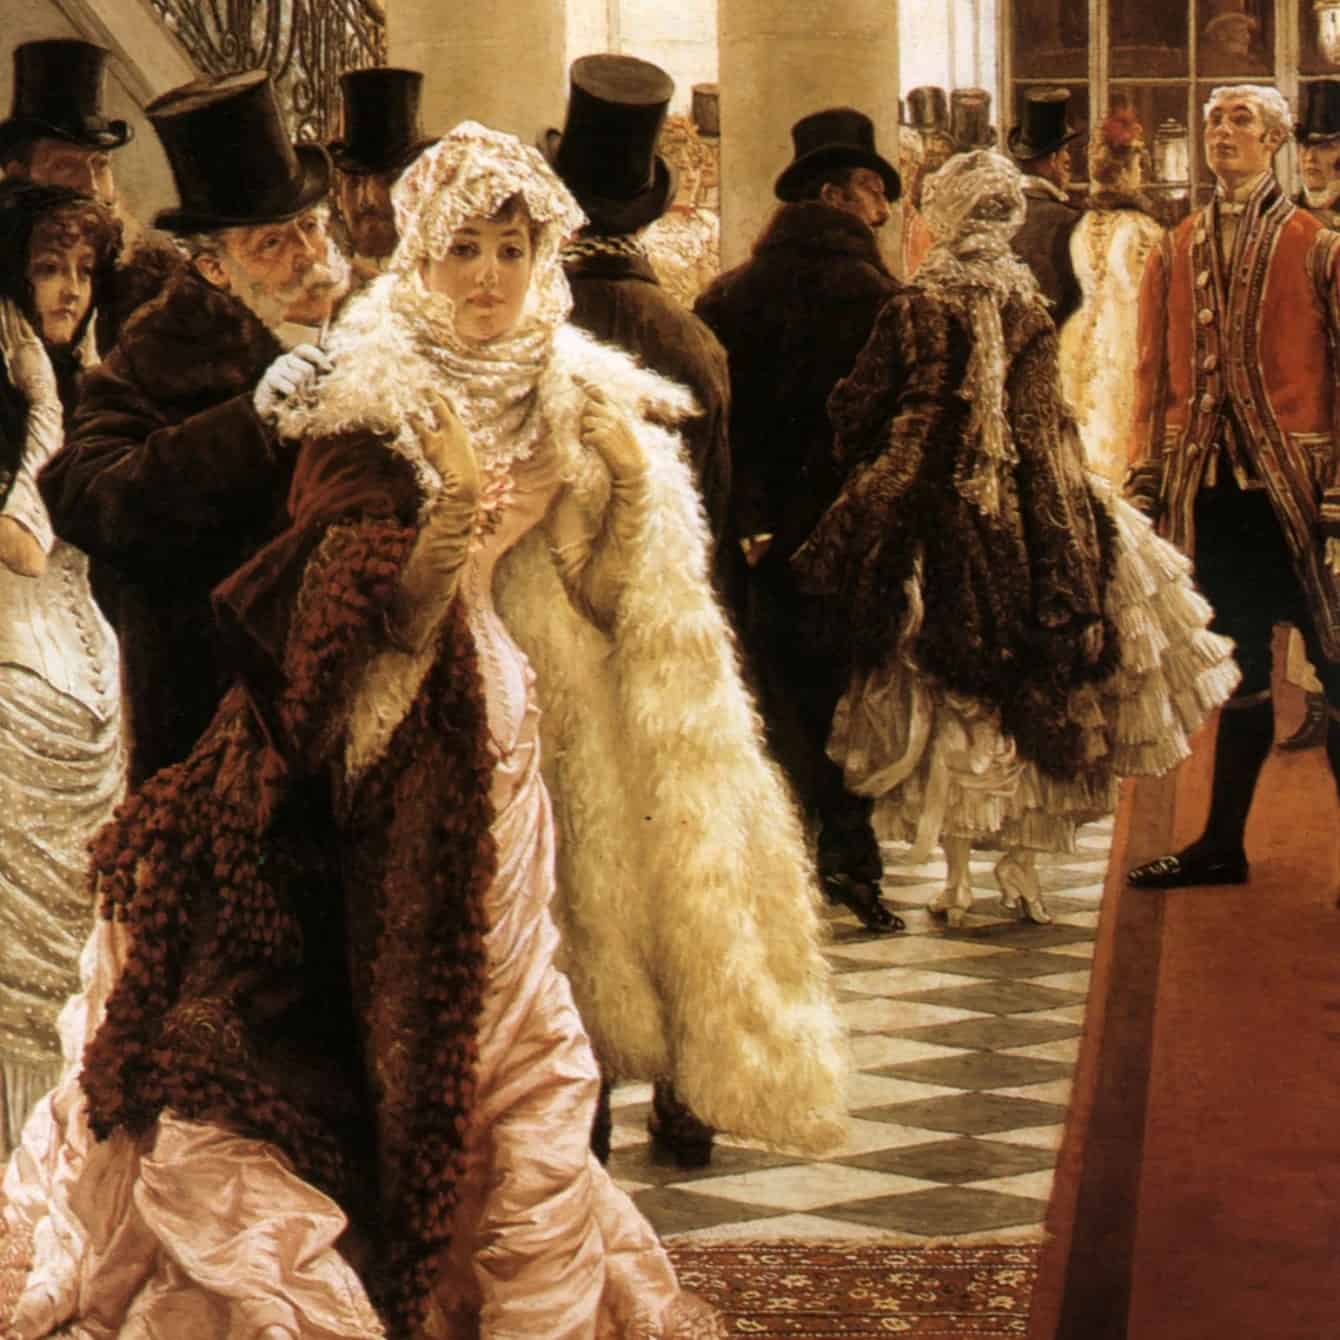 James Tissot, La Femme de la mode (La Mondaine), 1885.